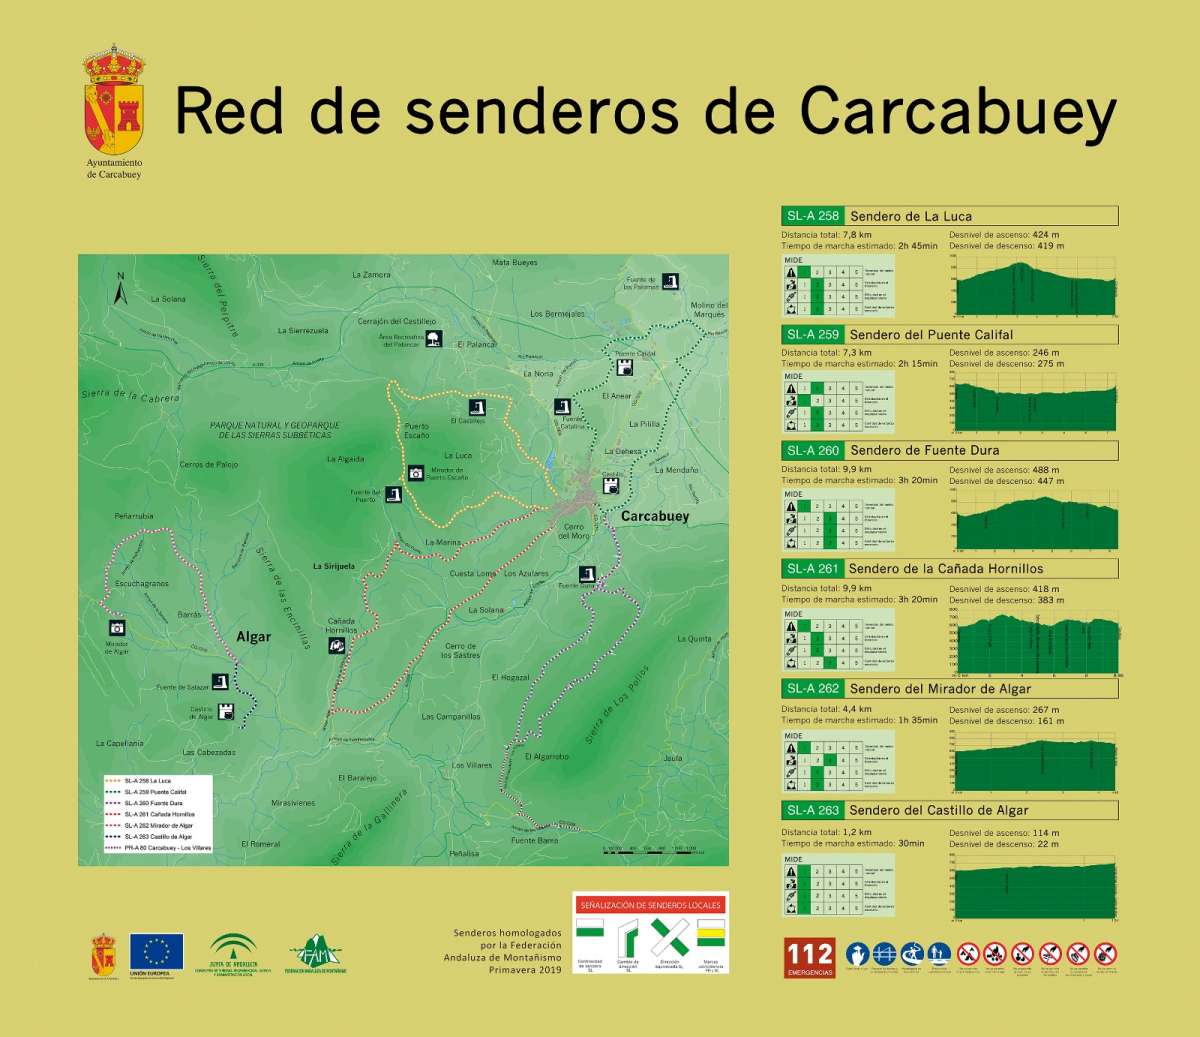 RED DE SENDEROS DE CARCABUEY